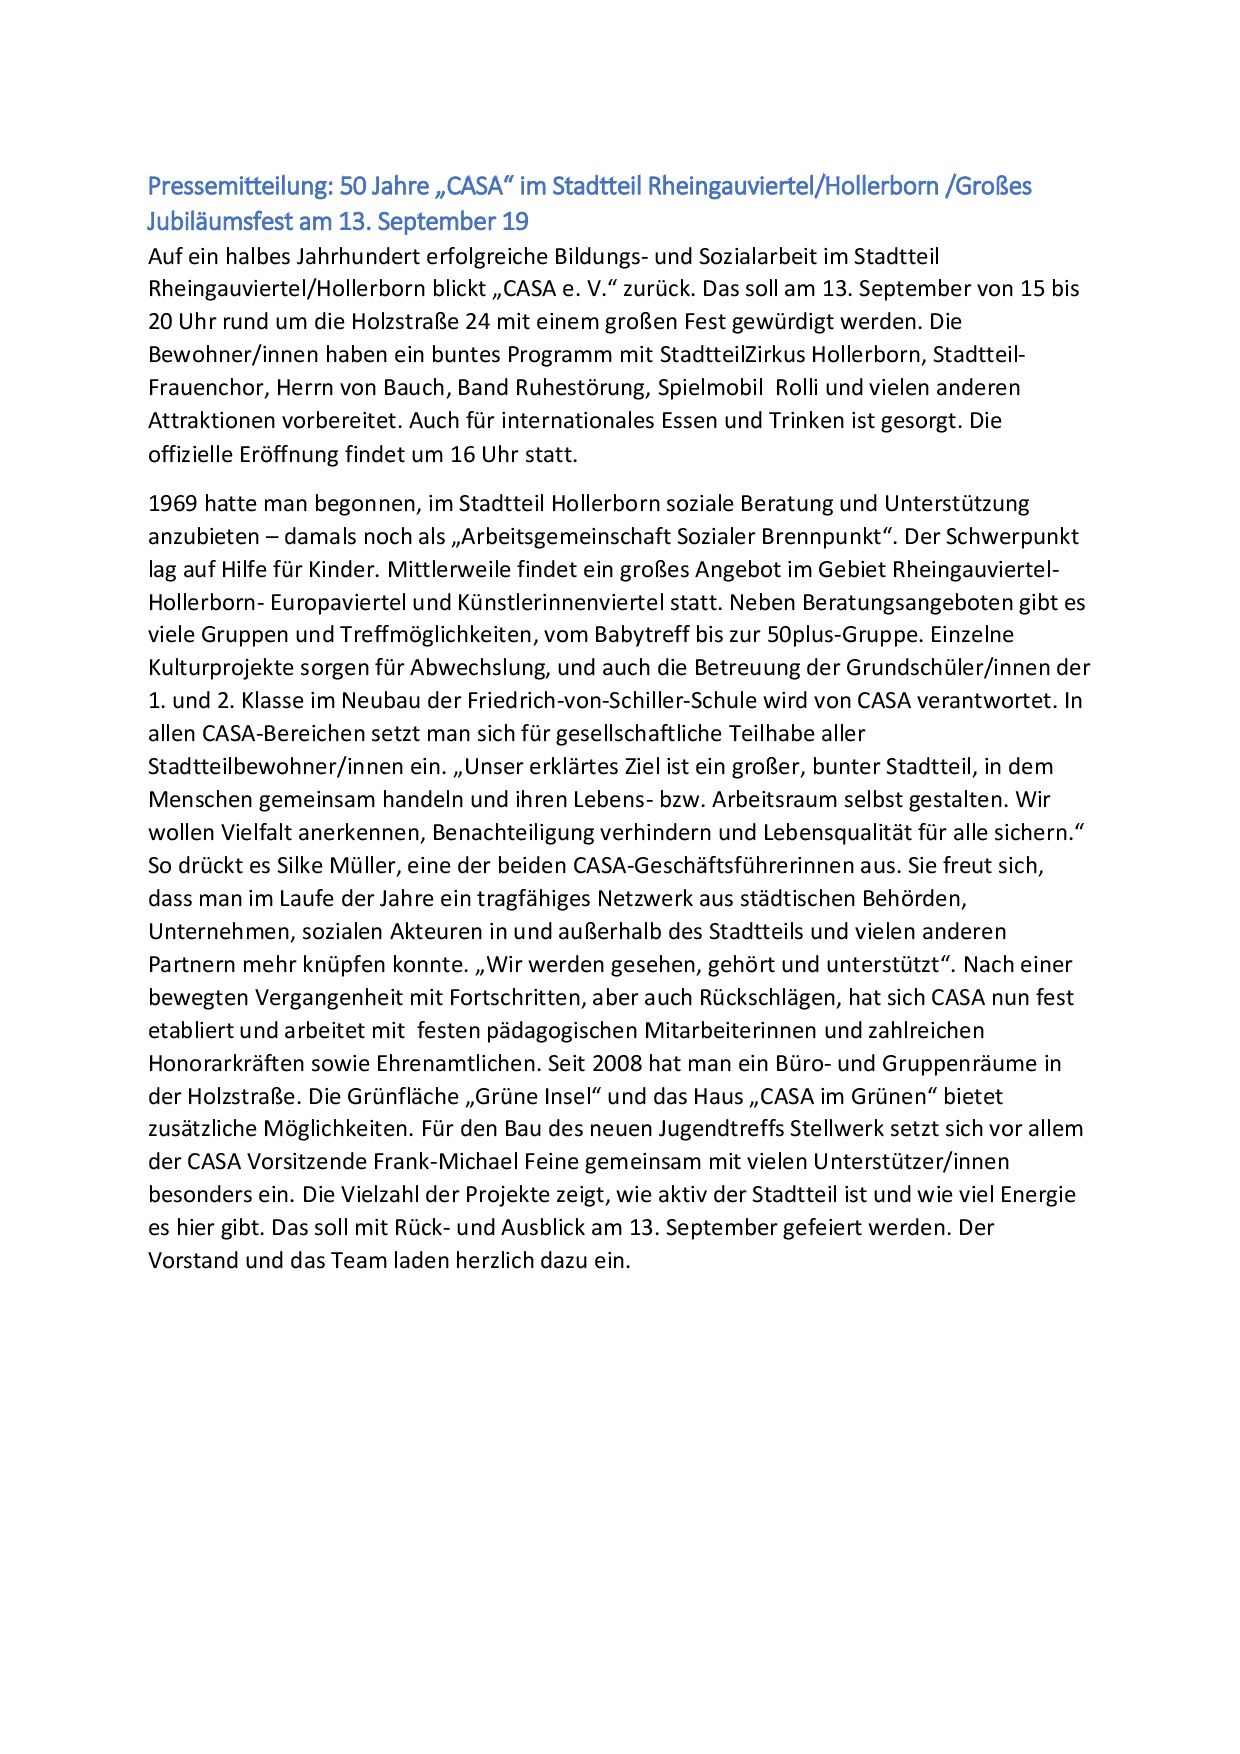 2019-09-05 Jubiläumsfest 50 Jahre Pressemitteilung